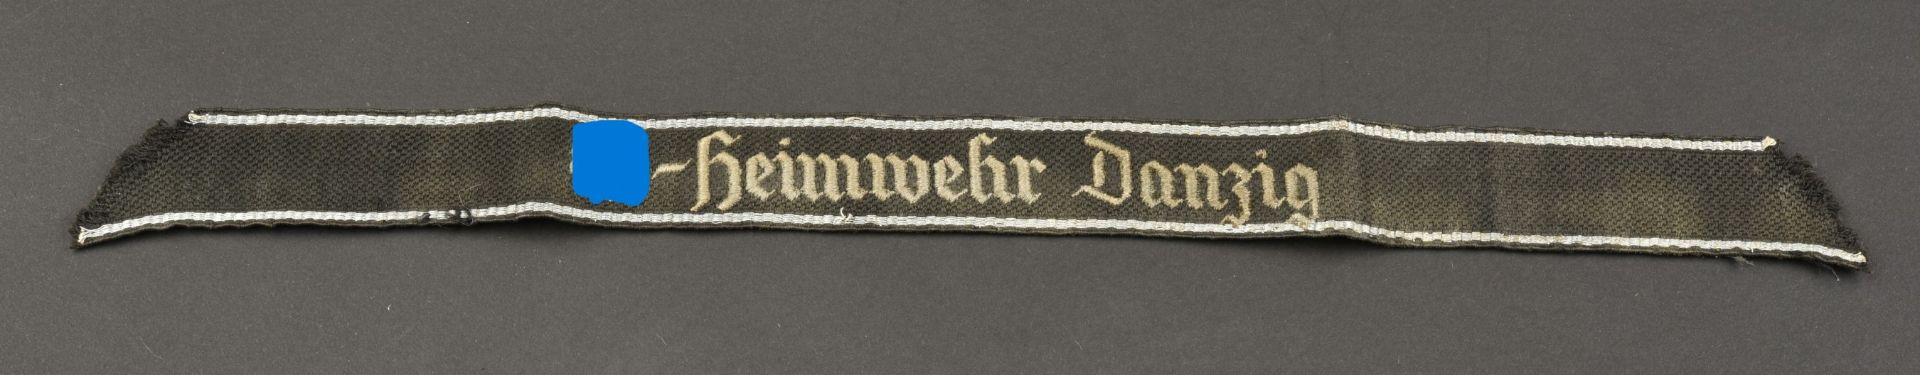 Bande de bras SS Heimwehr Danzig. Heimwehr Danzig Cufftittle.